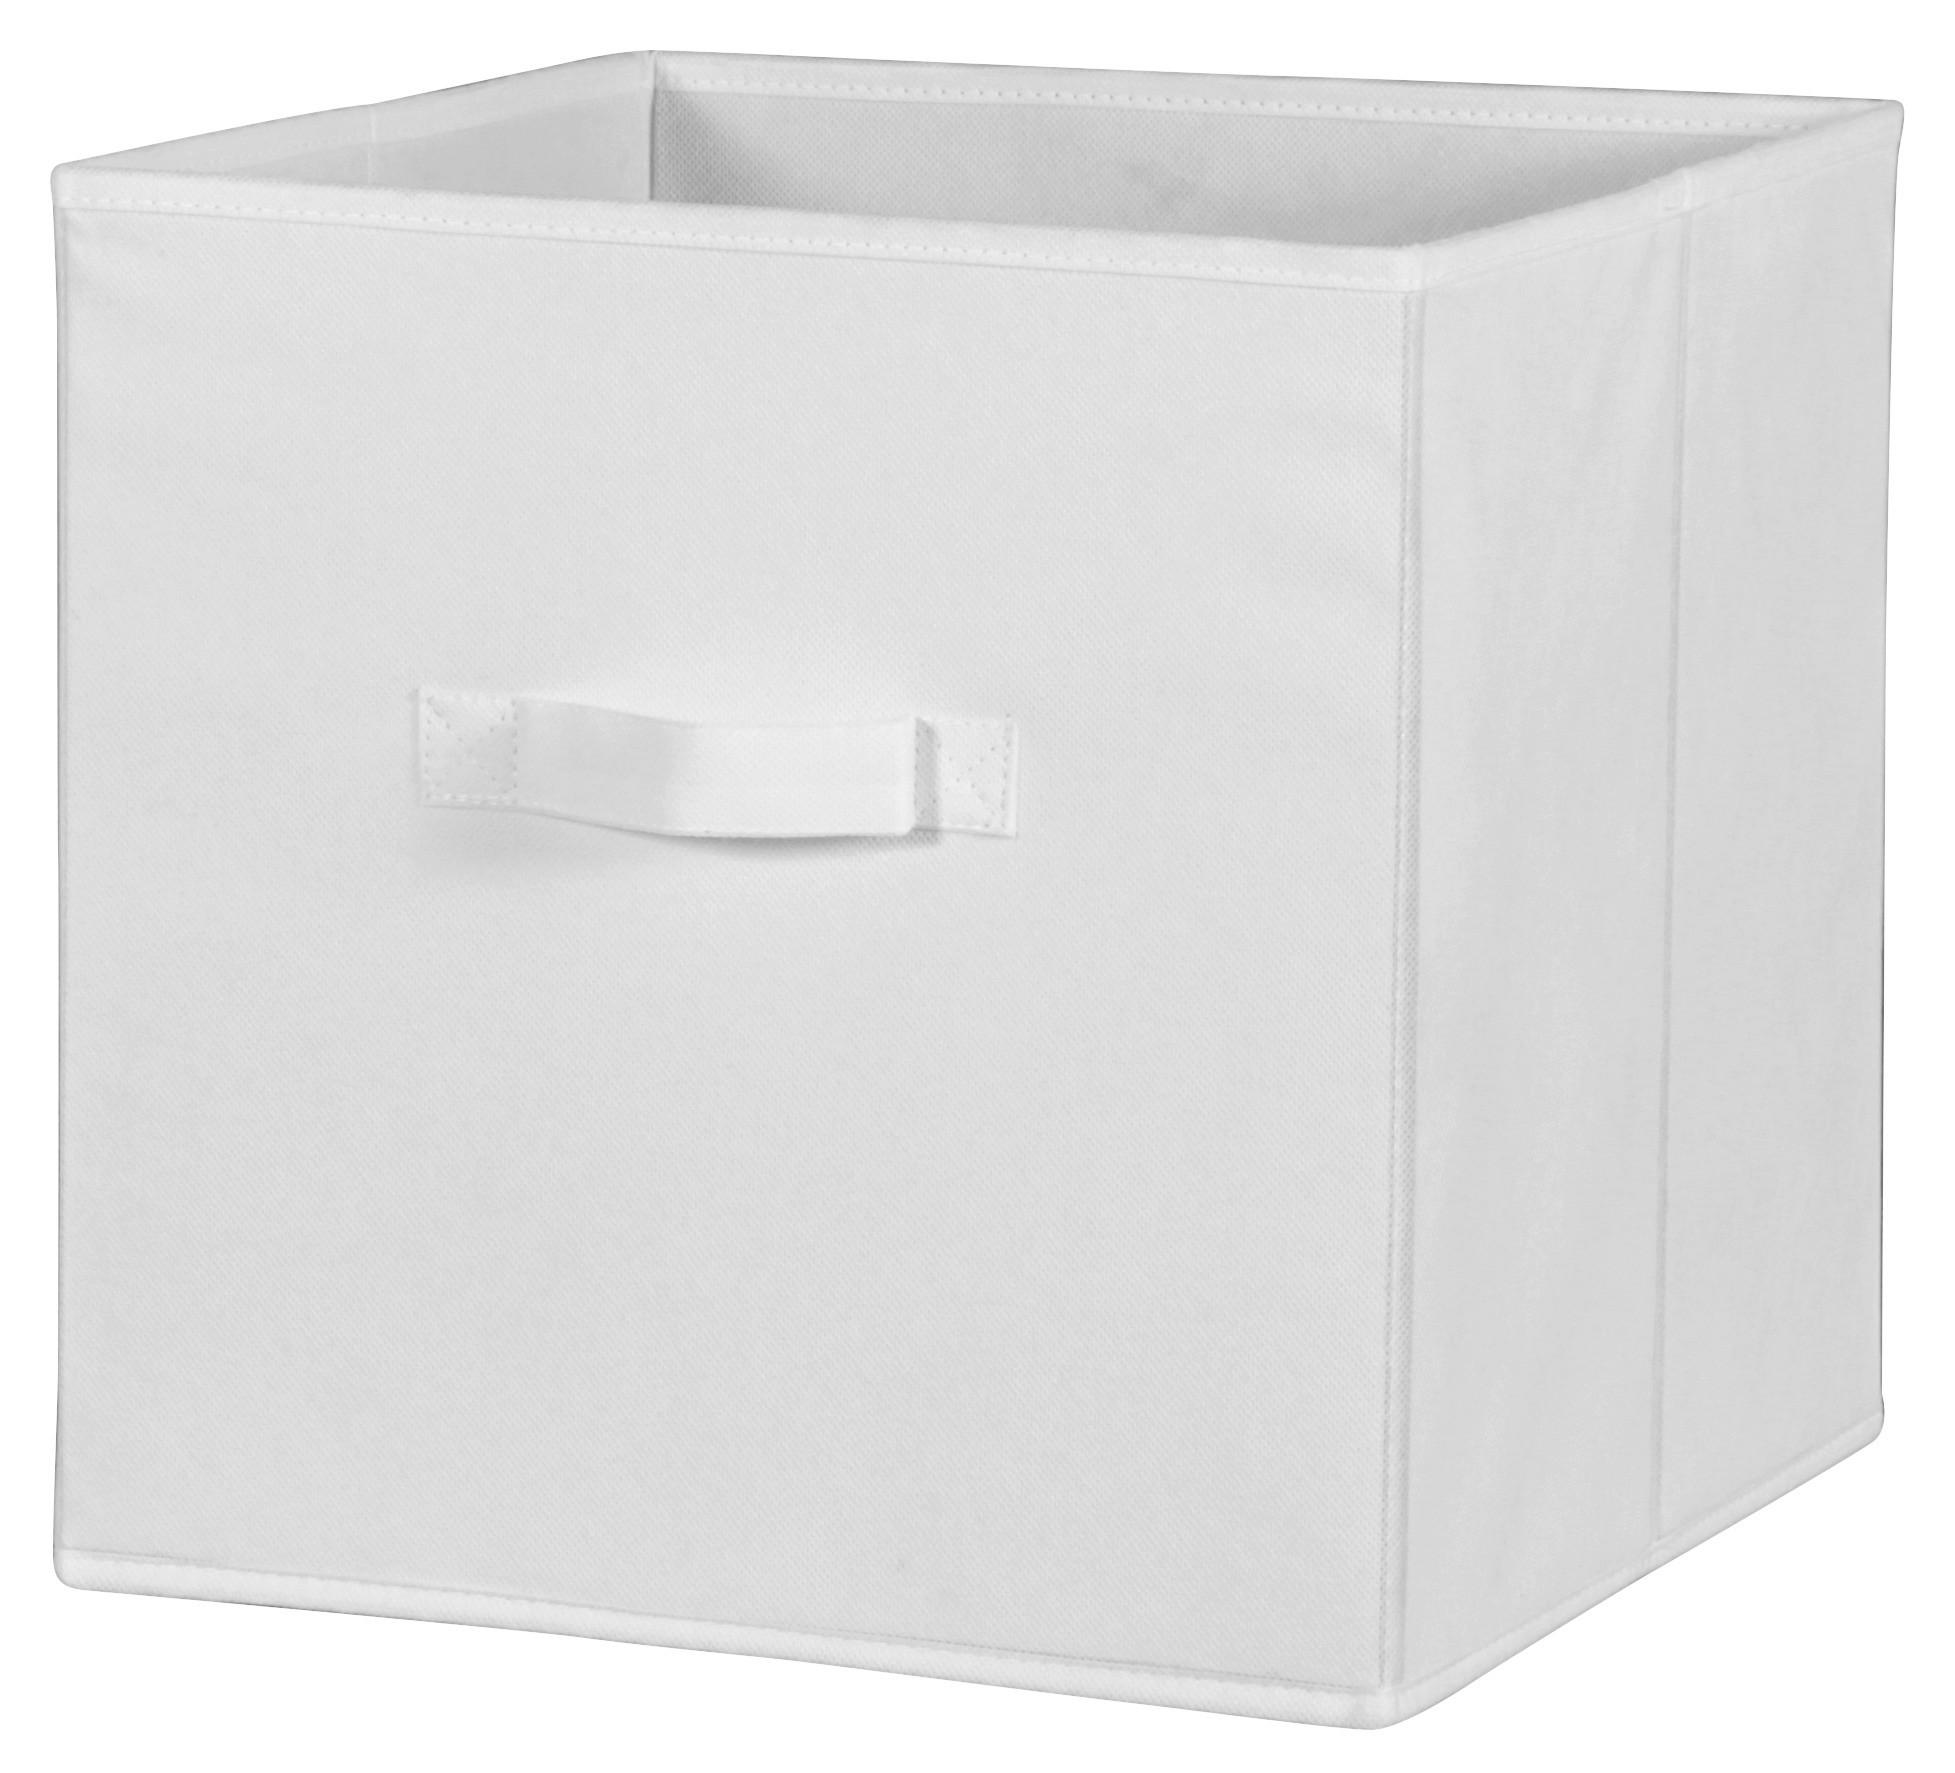 Faltbox Cliff Vlies Weiß 32x32x32 cm mit Tragegriff - Weiß, MODERN, Textil (32/32/32cm)